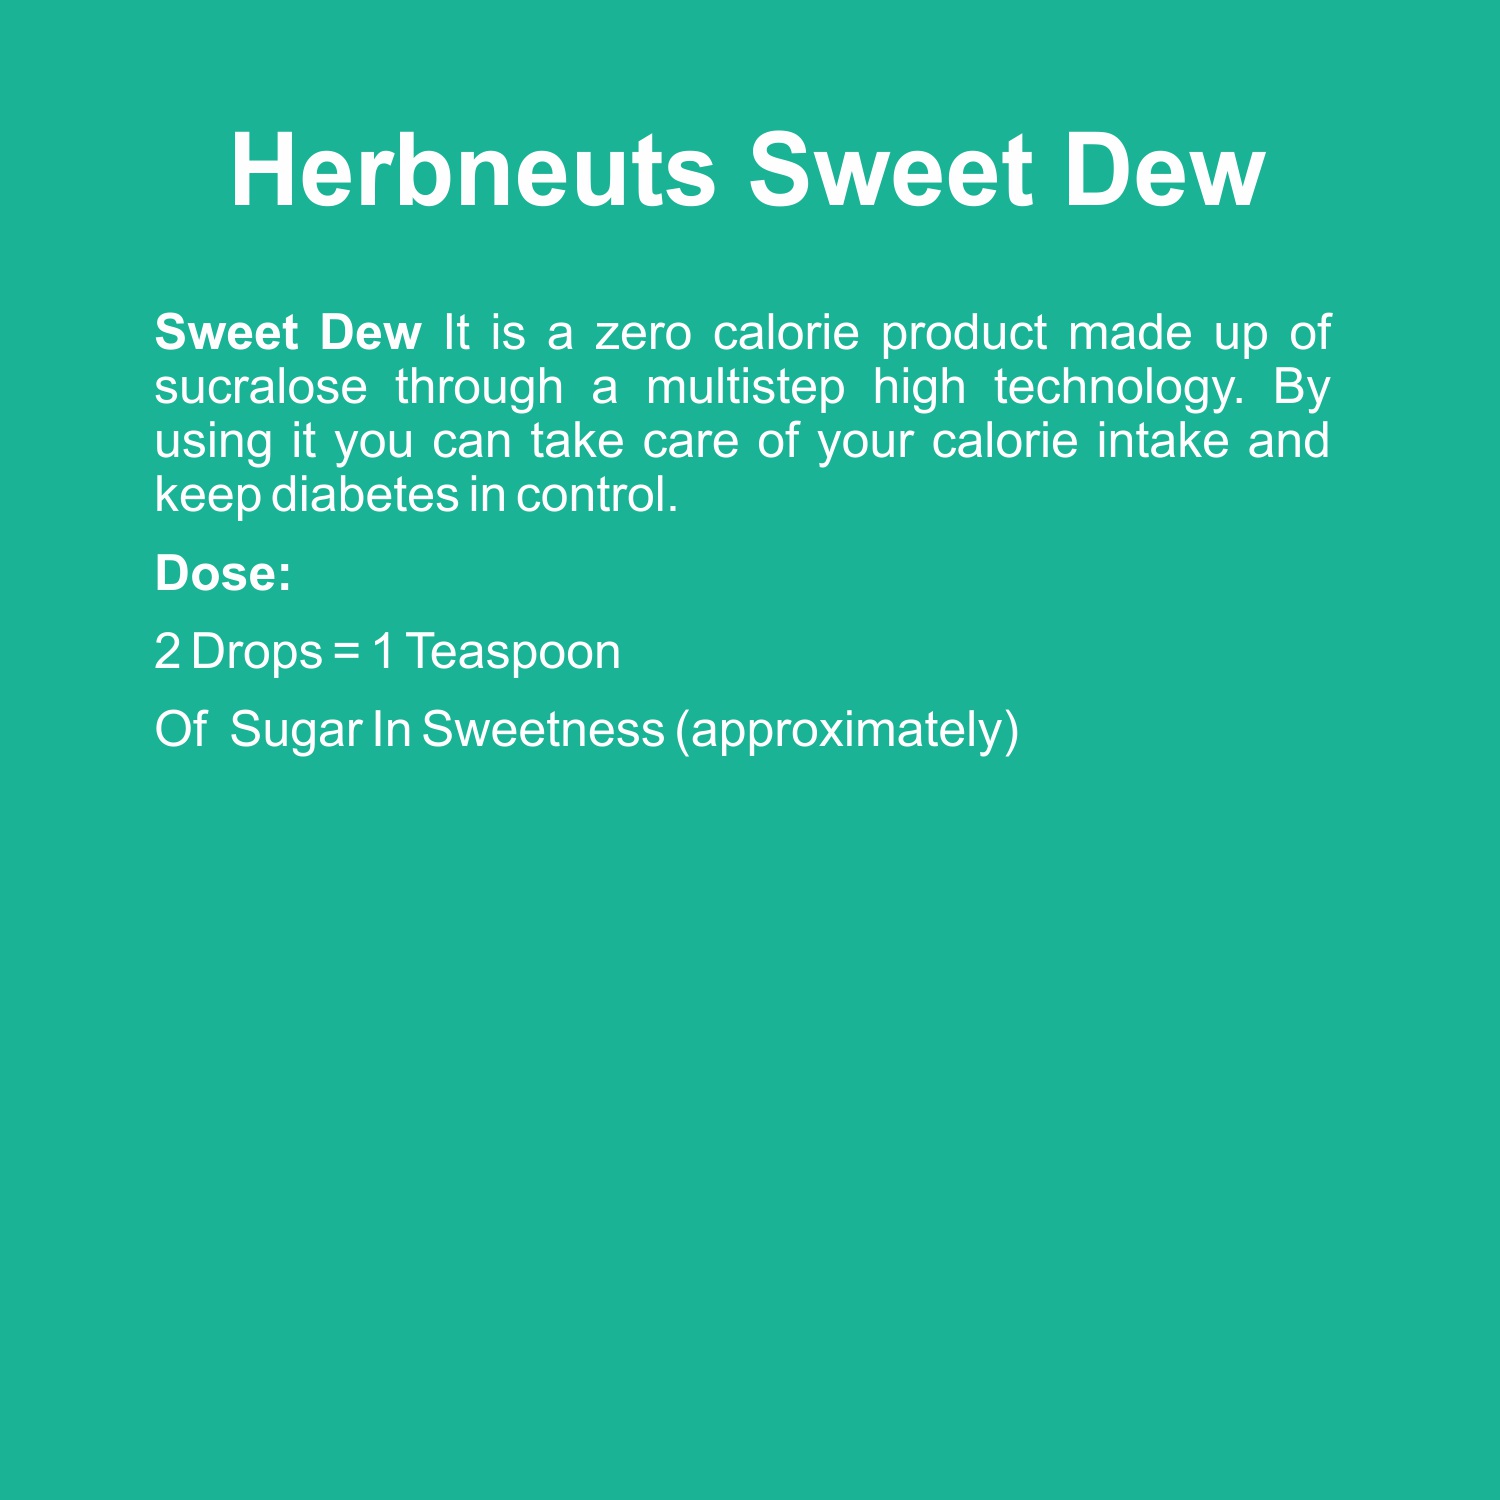 Sweet Dew